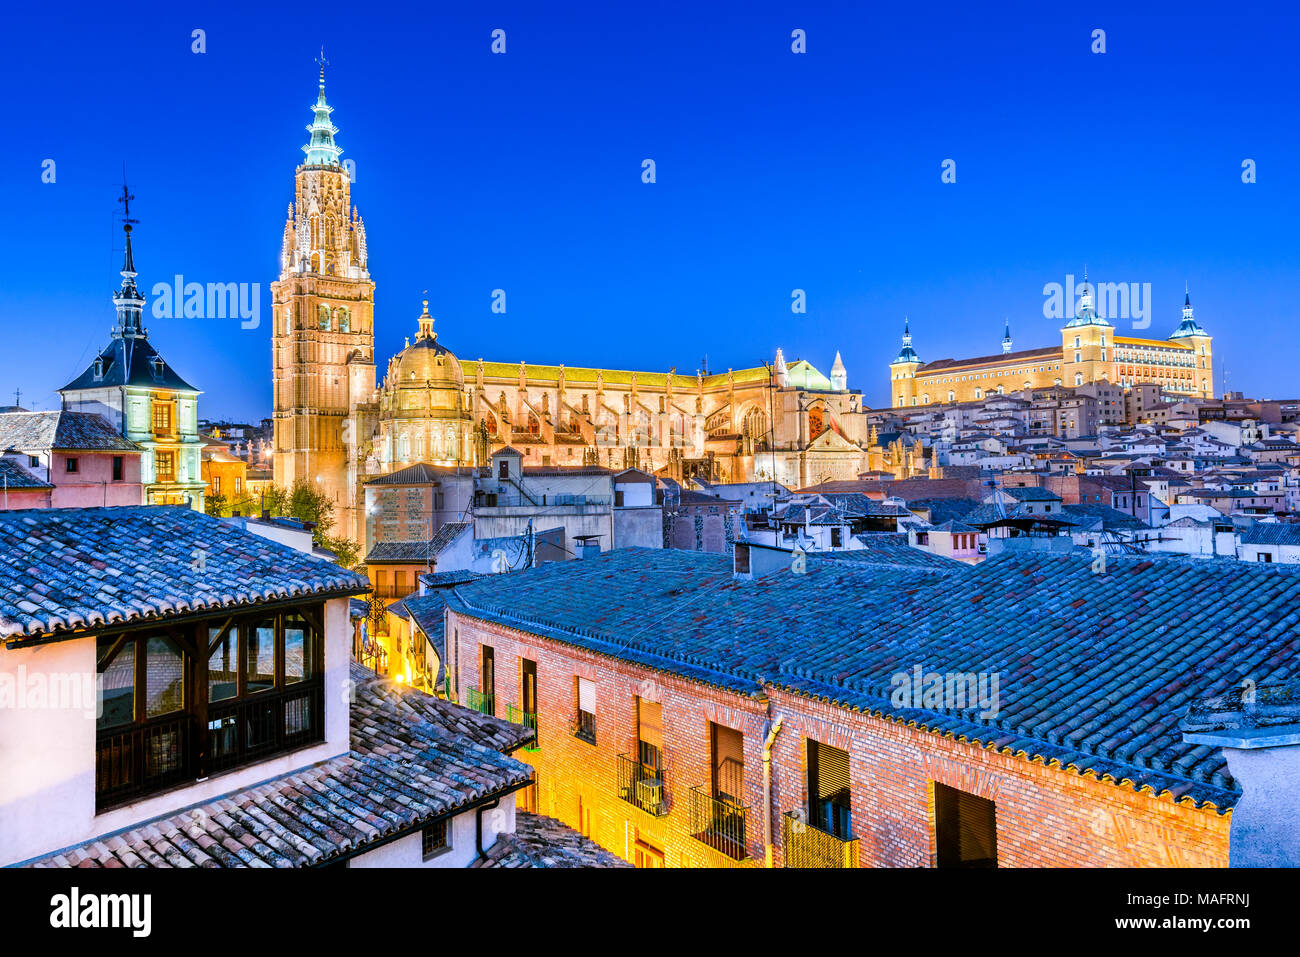 Toledo, Espagne. Ville médiévale en Castilla la Mancha avec Santa Iglesia Catedral et Alcazar, monument de l'Espagne. Banque D'Images